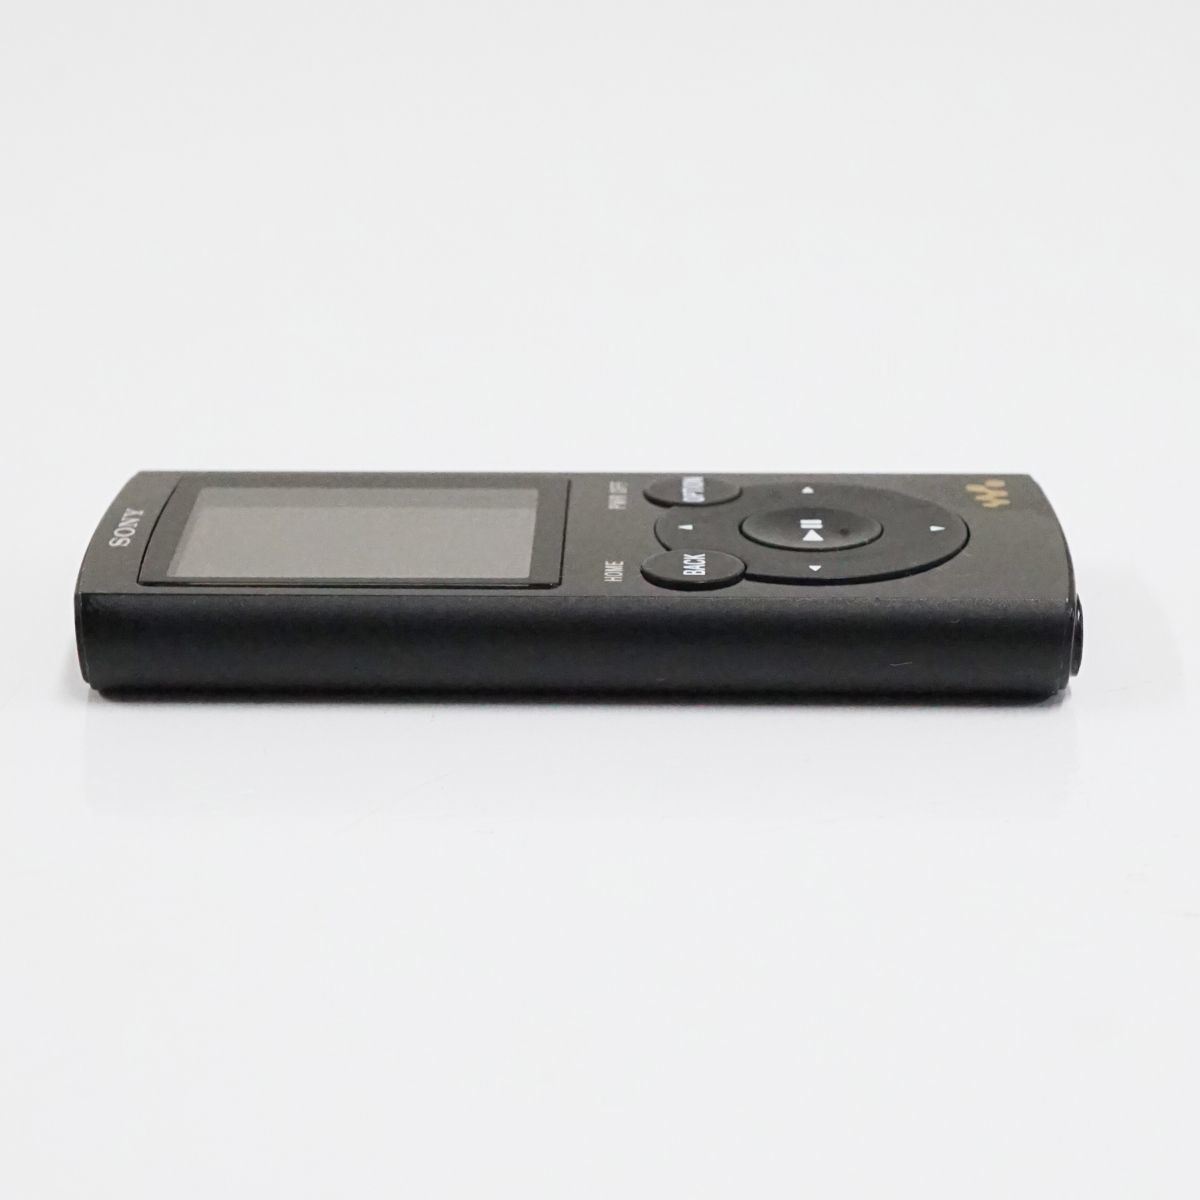 SONY ウォークマン NW-E063 4GB USED美品 本体のみ ブラック デジタルミュージックプレーヤー 【難有】 T V9004_画像9